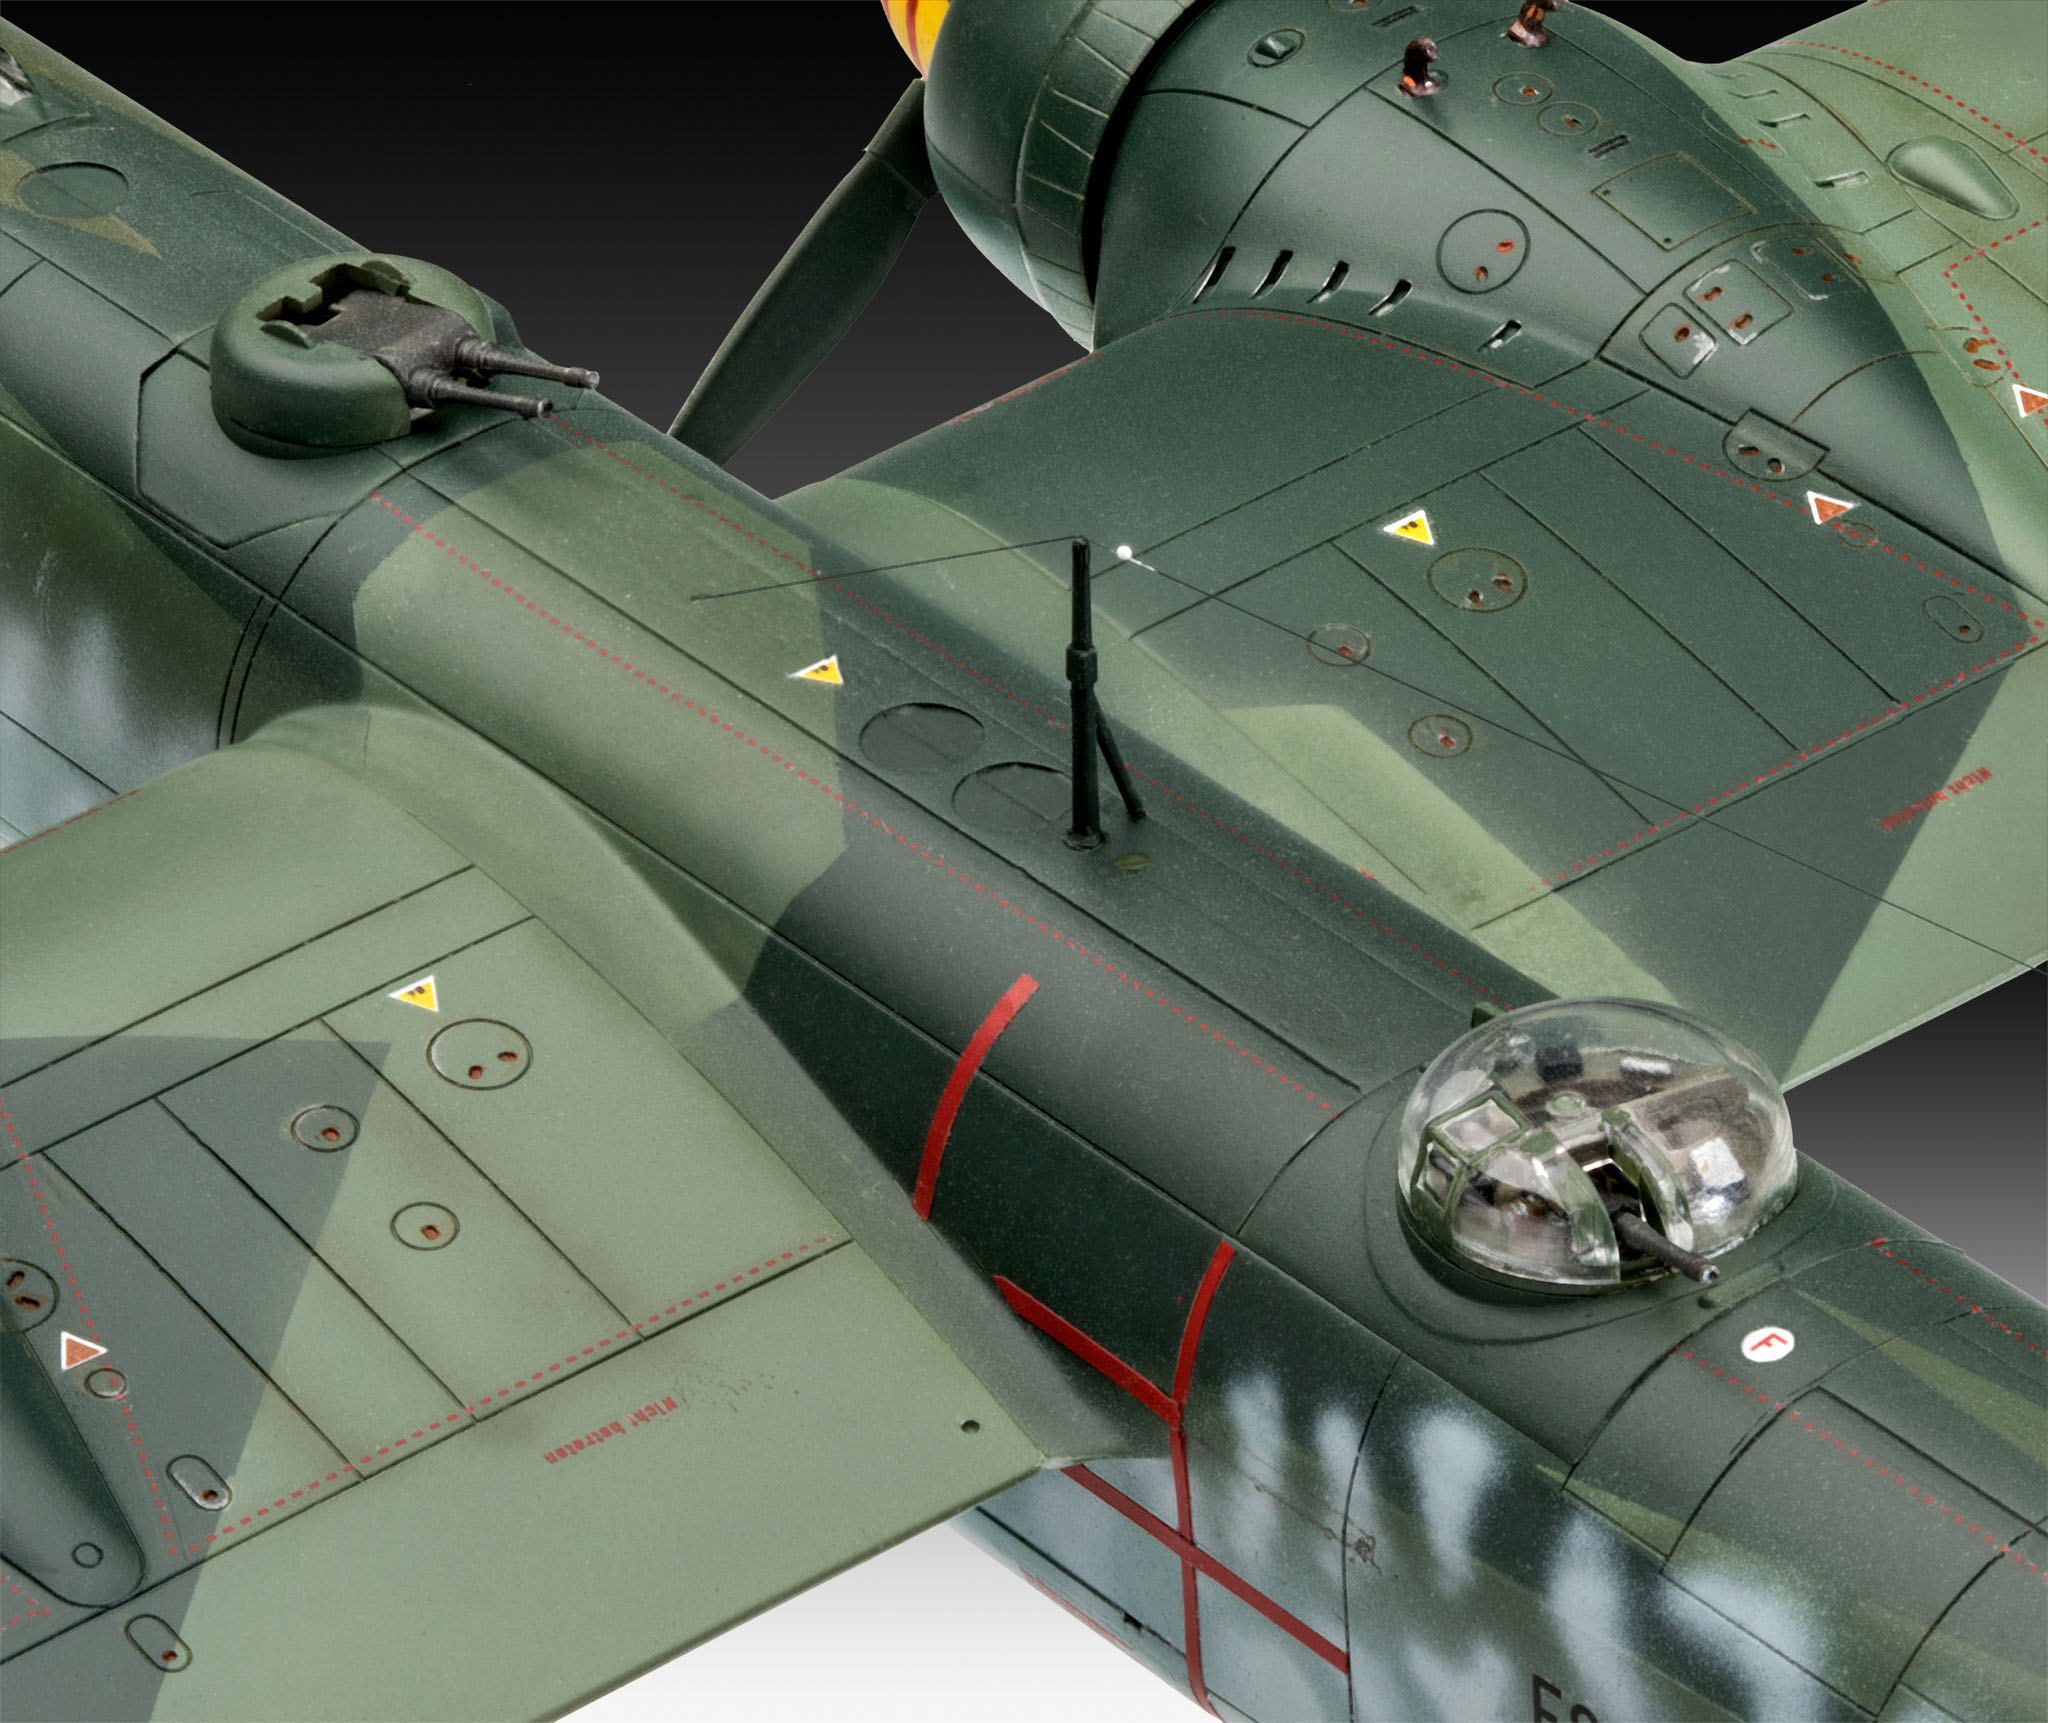 REVELL Heinkel A-5 Mehrfarbig Bausatz, Greif HE177